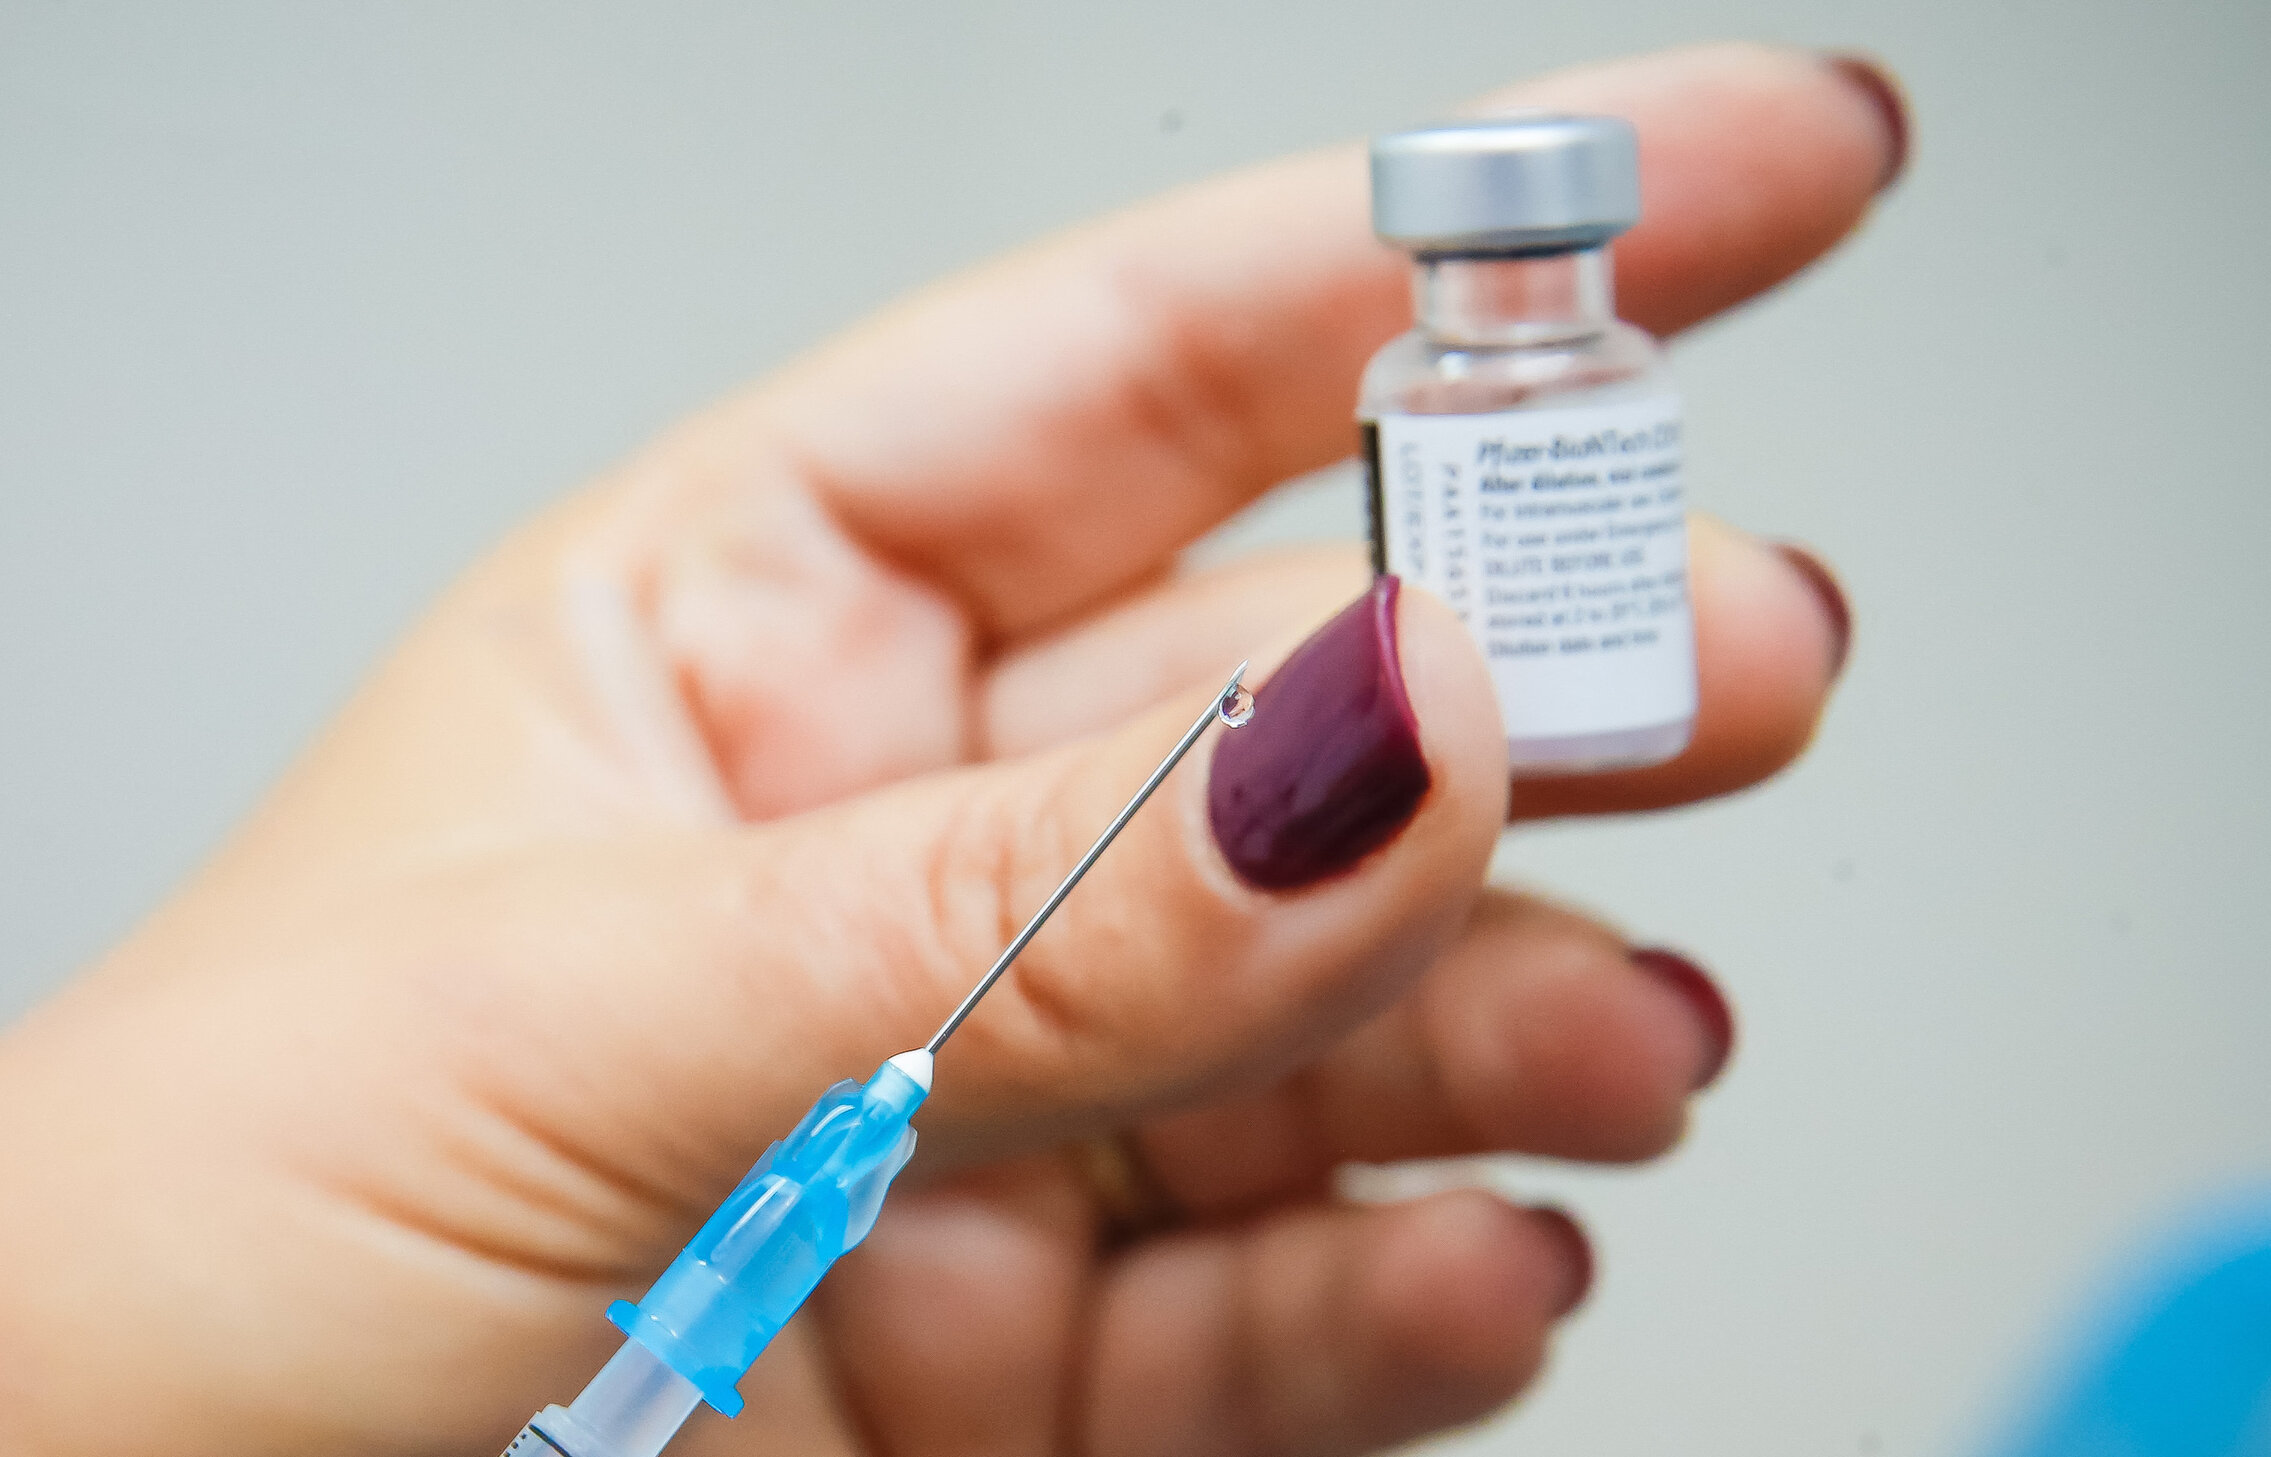 Uniunea Europeană aprobă vaccinul Pfizer/BioNTec. Campania poate începe pe 27 decembrie